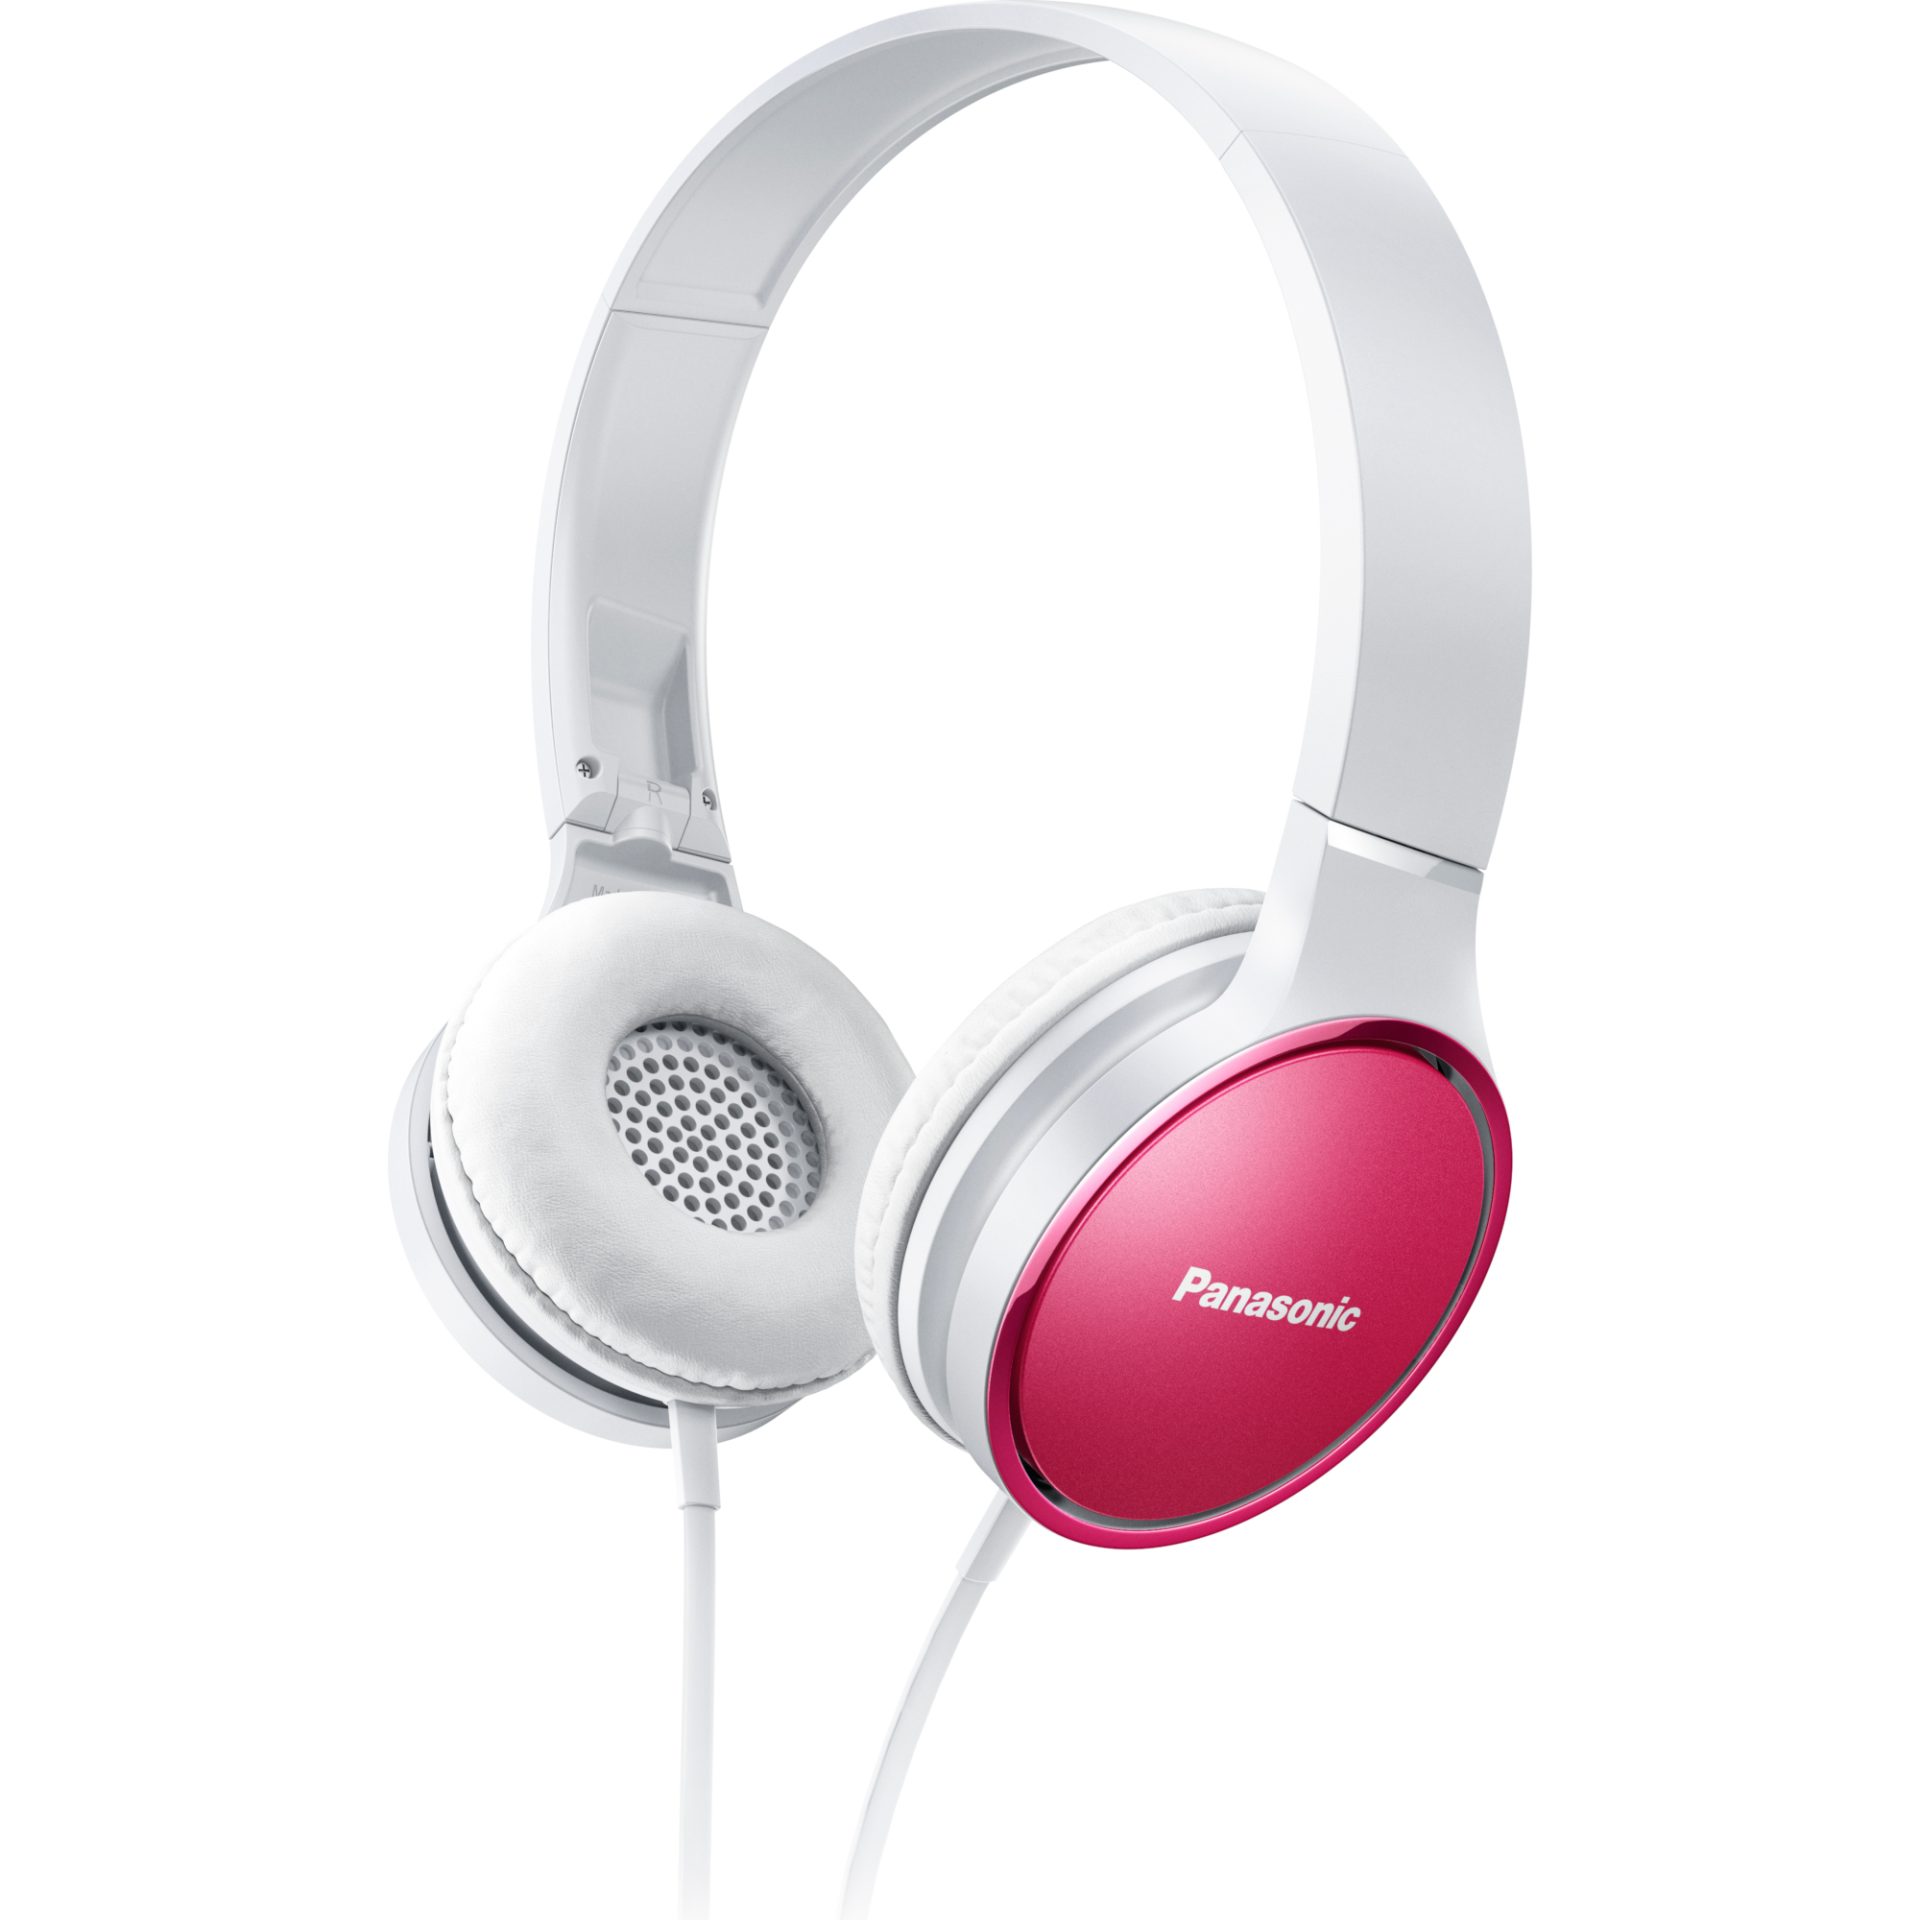 Panasonic RP-HF300 stylová kabelová sluchátka přes uši s mikrofonem (30mm neodymový magnetický měnič, skládací dovnitř, pohodlné), růžová